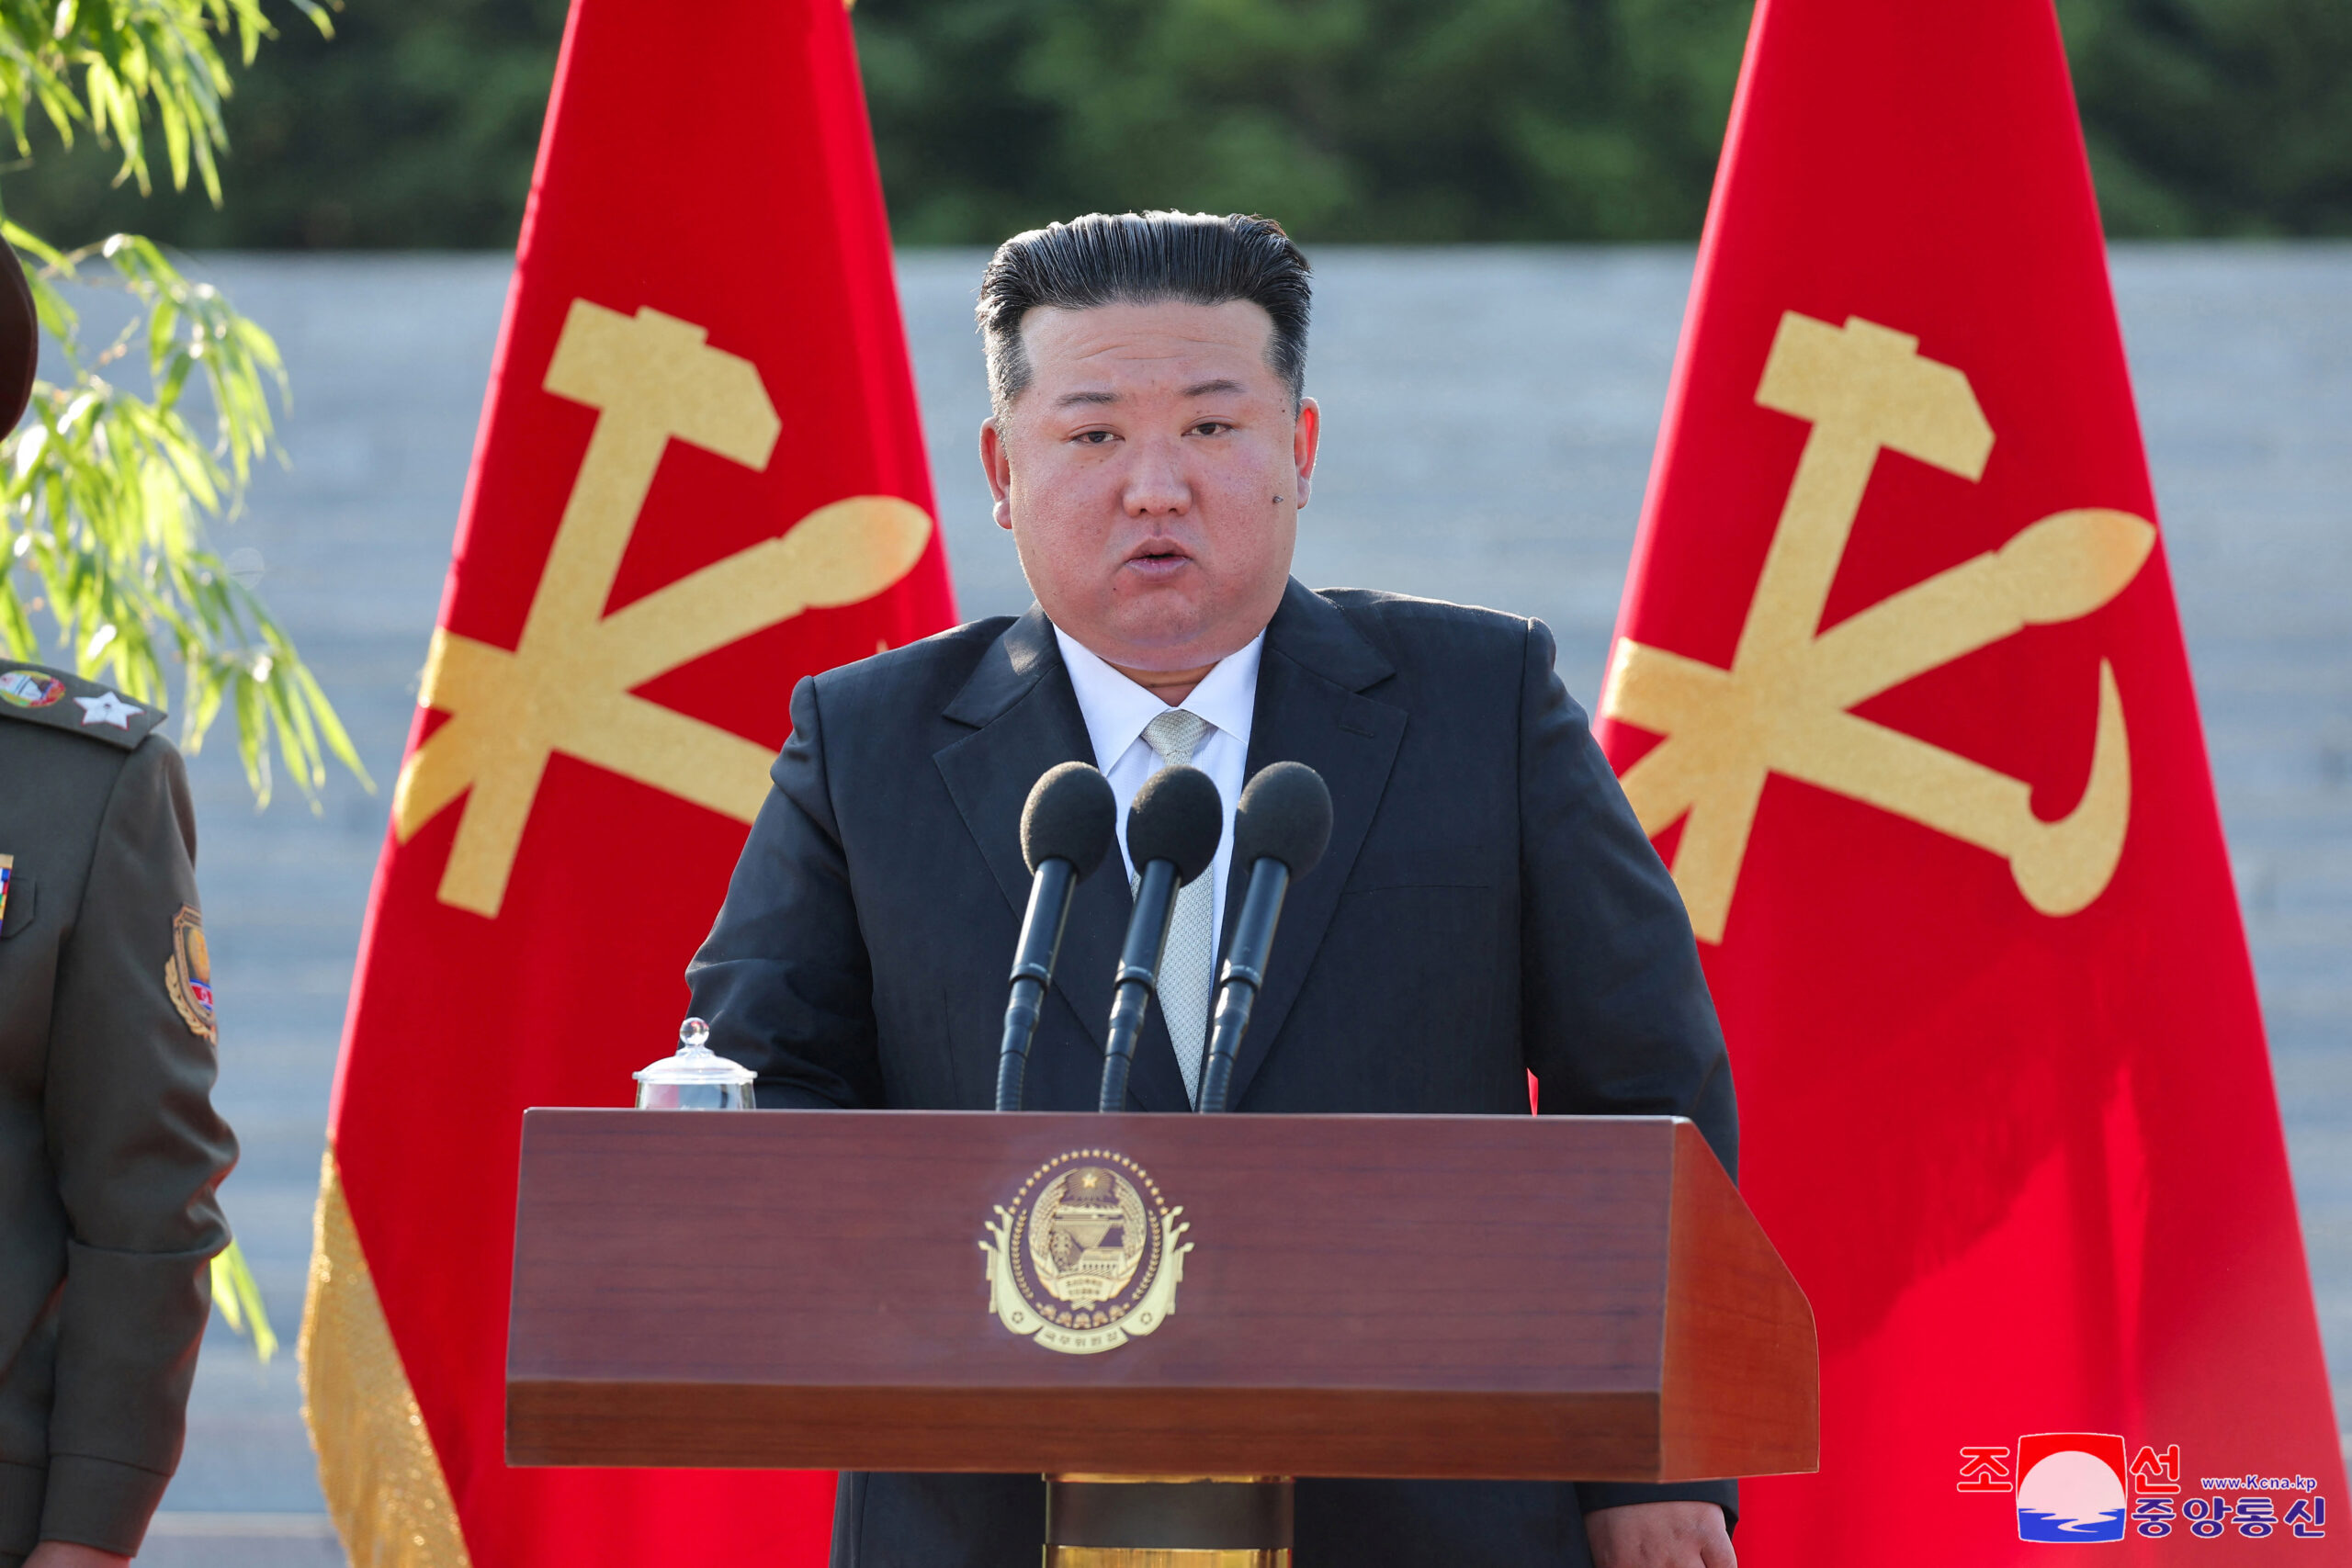 Kim Jong Un teria enviado balões com cocô para a Coreia do Sul contra o kpop